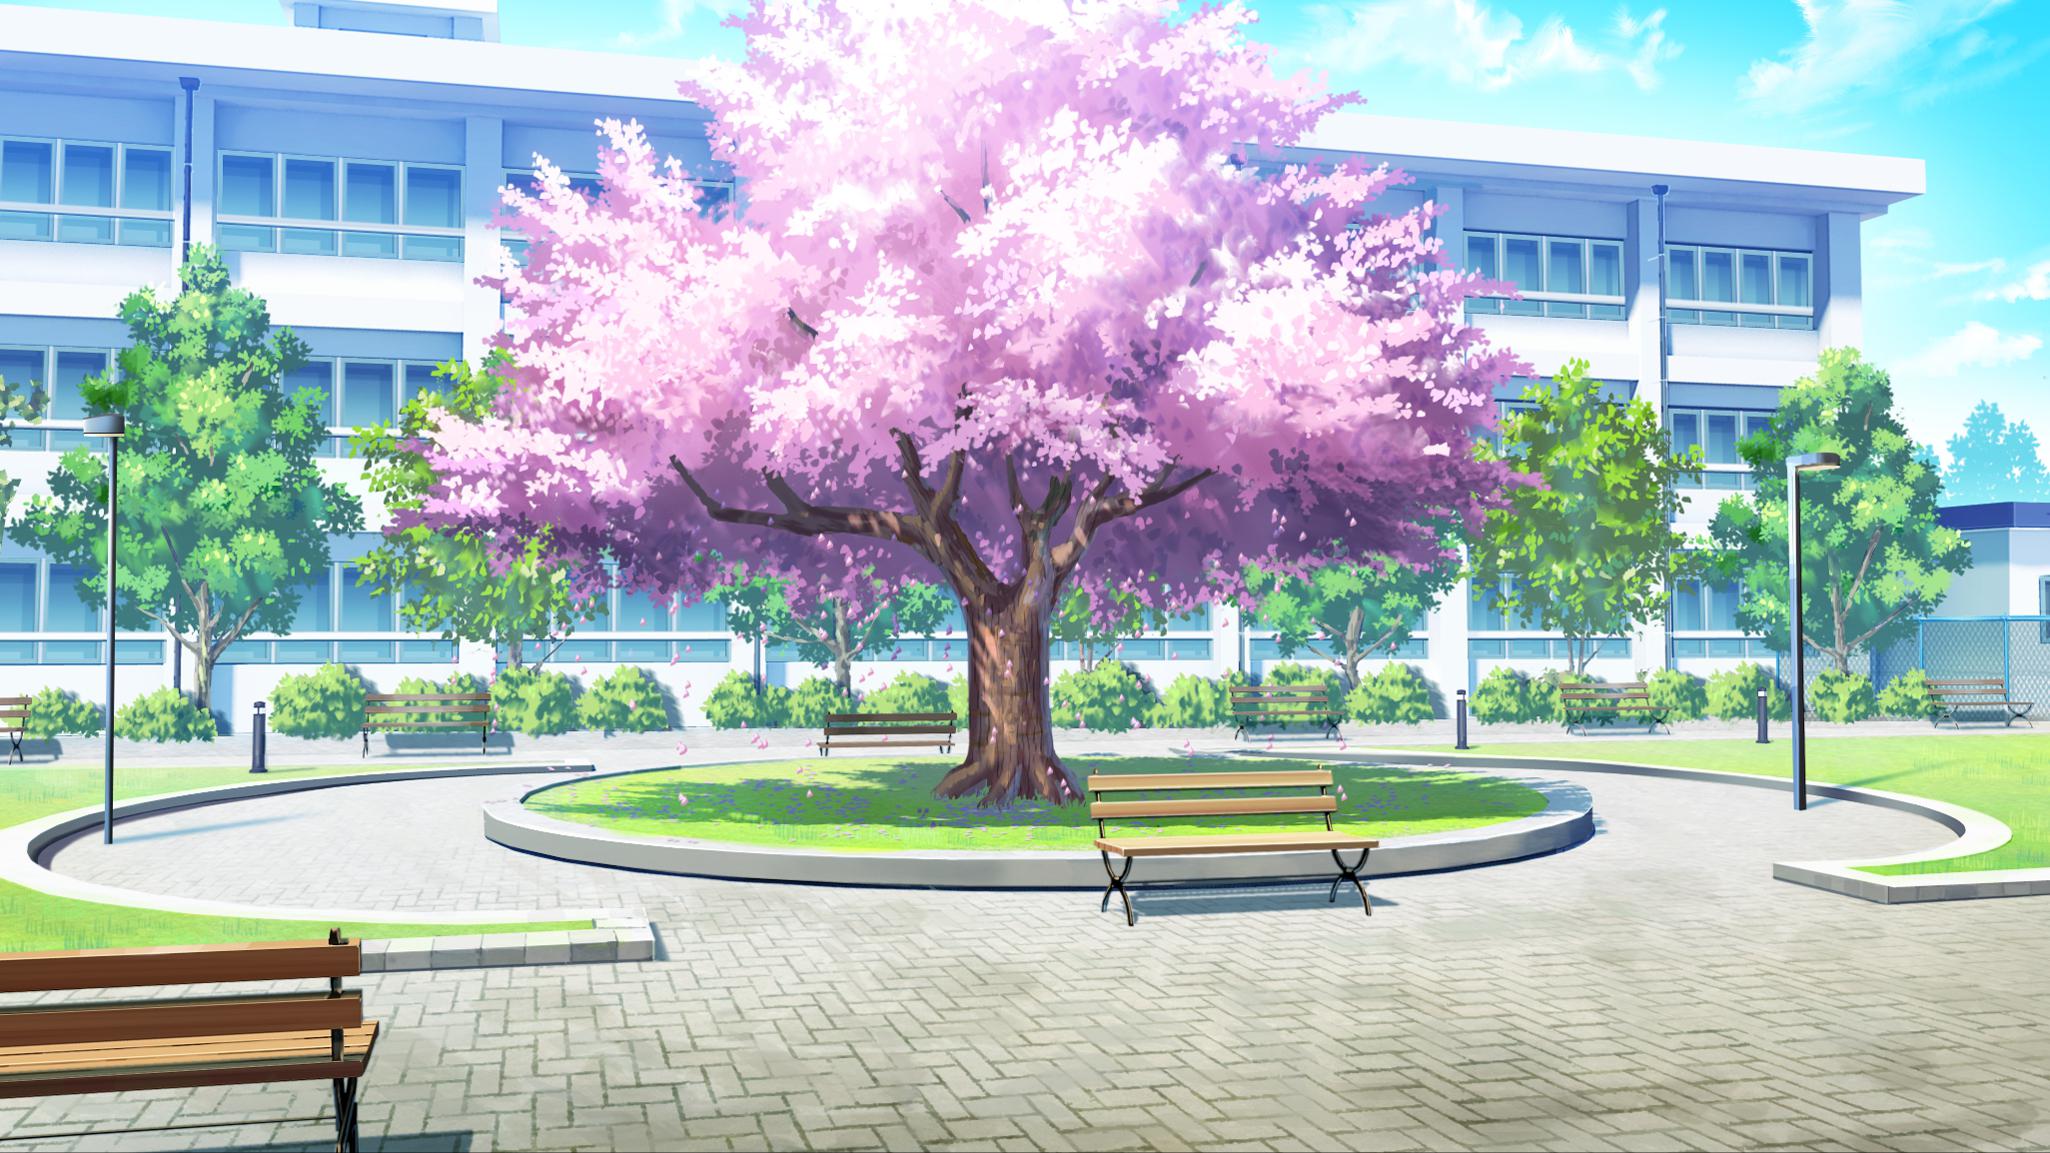 Vườn anh đào nở rực rỡ phủ đầy toàn bộ khung cảnh trường học anime trong hình ảnh này sẽ đưa bạn đến một thế giới giản dị nhưng không kém phần thơ mộng.